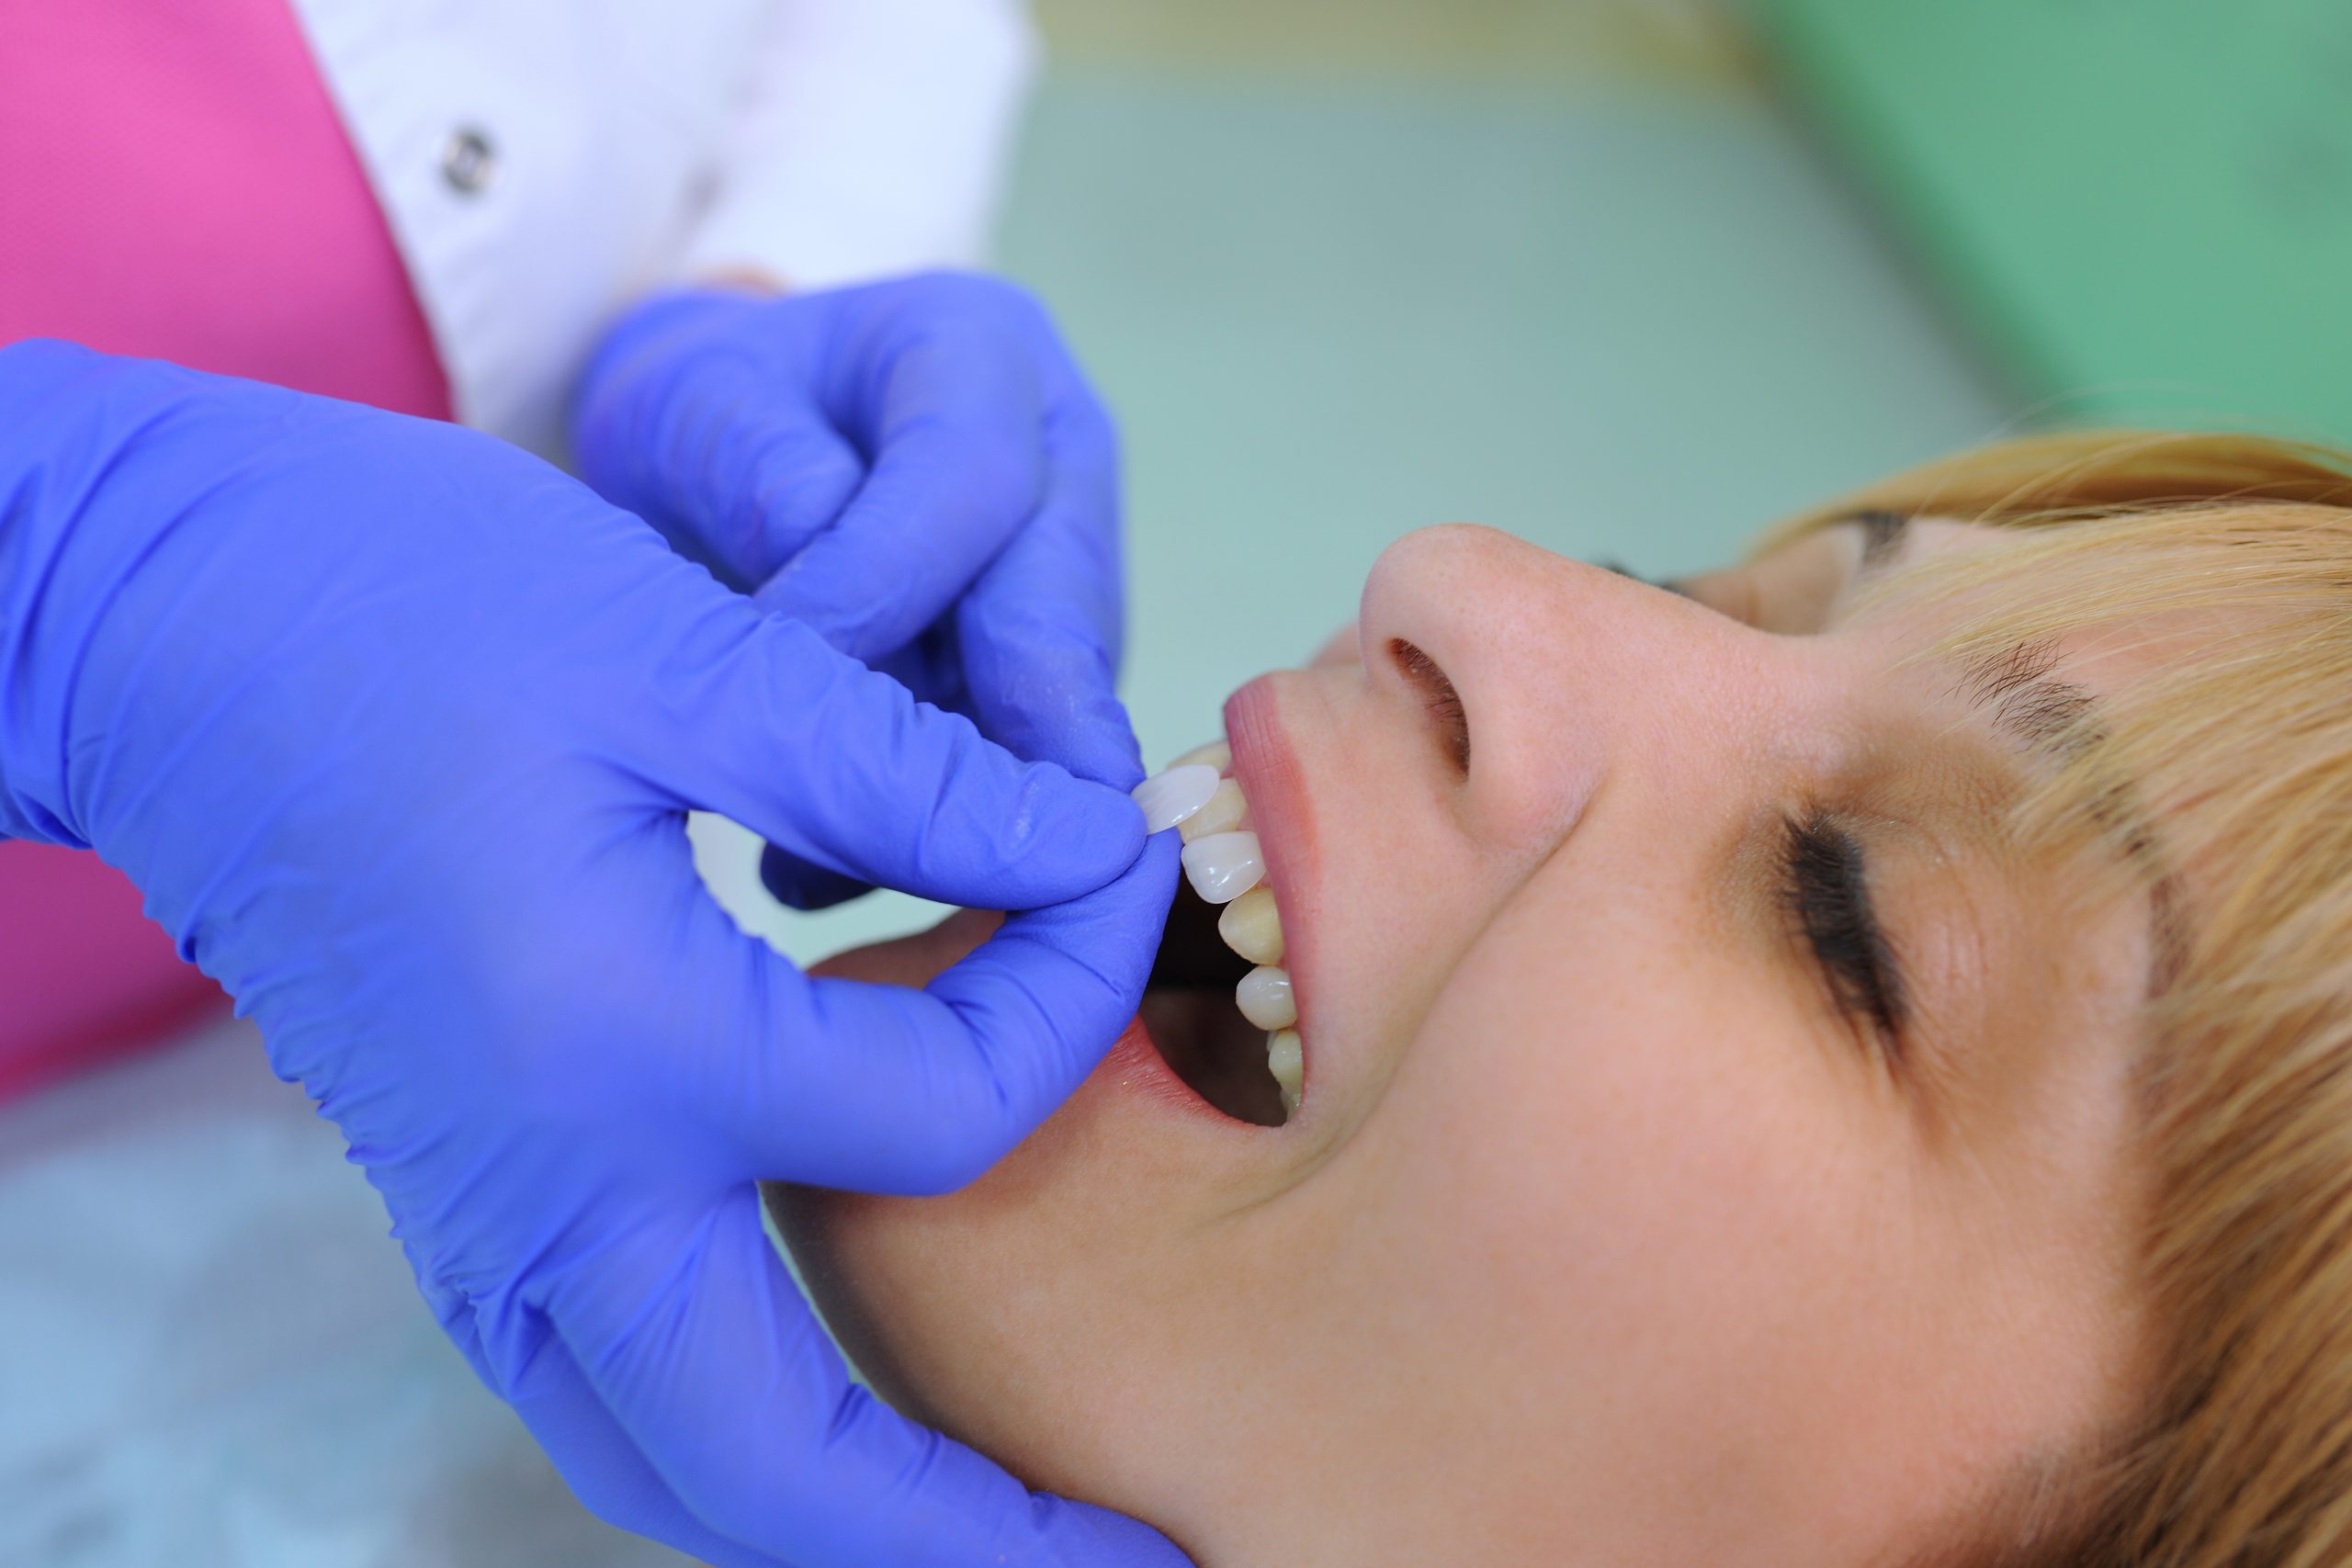 Dentist applying veneers to patient's teeth.